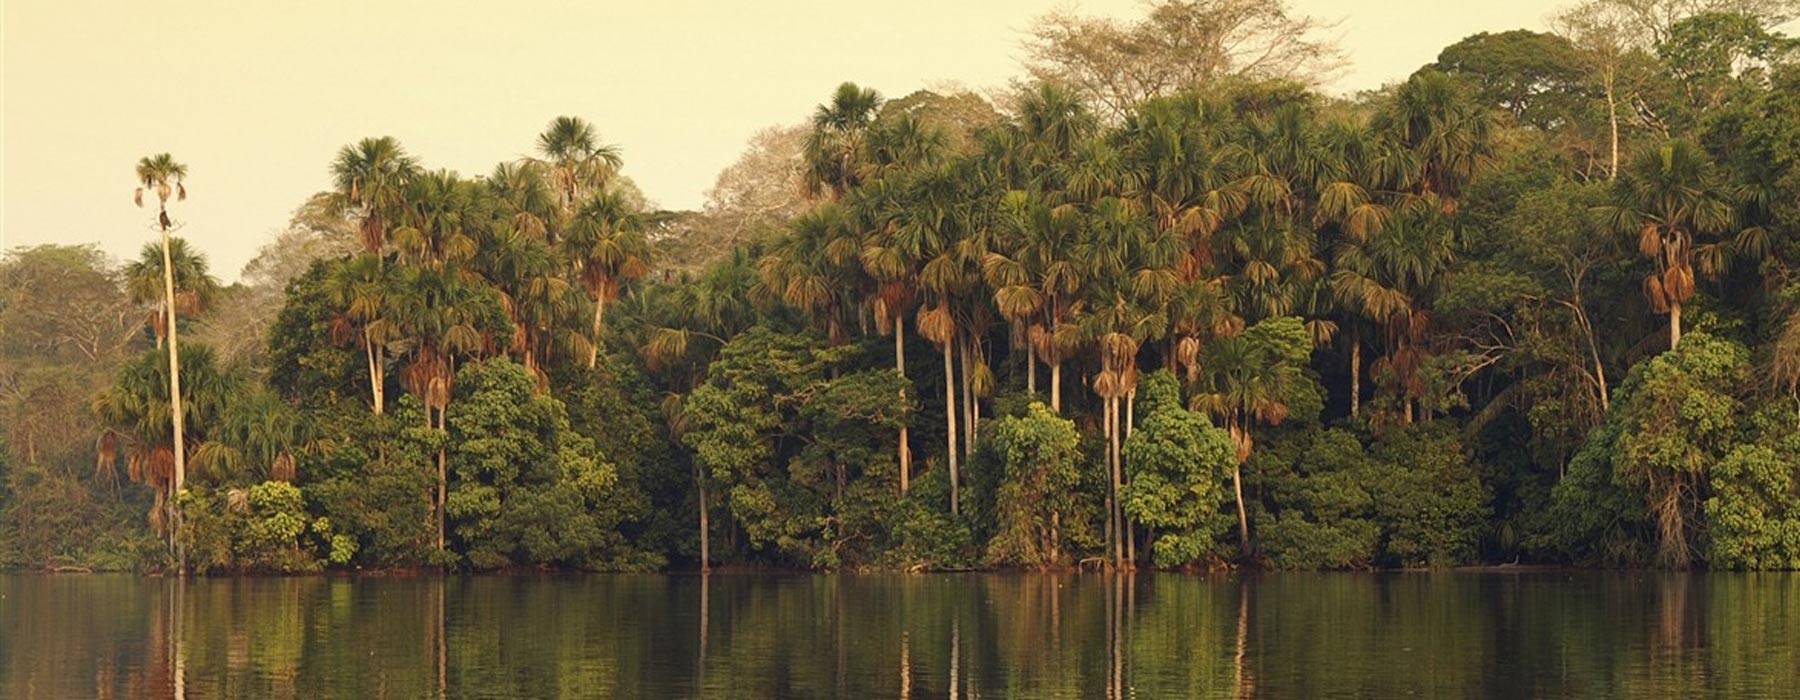 Peruvian Amazon<br class="hidden-md hidden-lg" /> Holidays